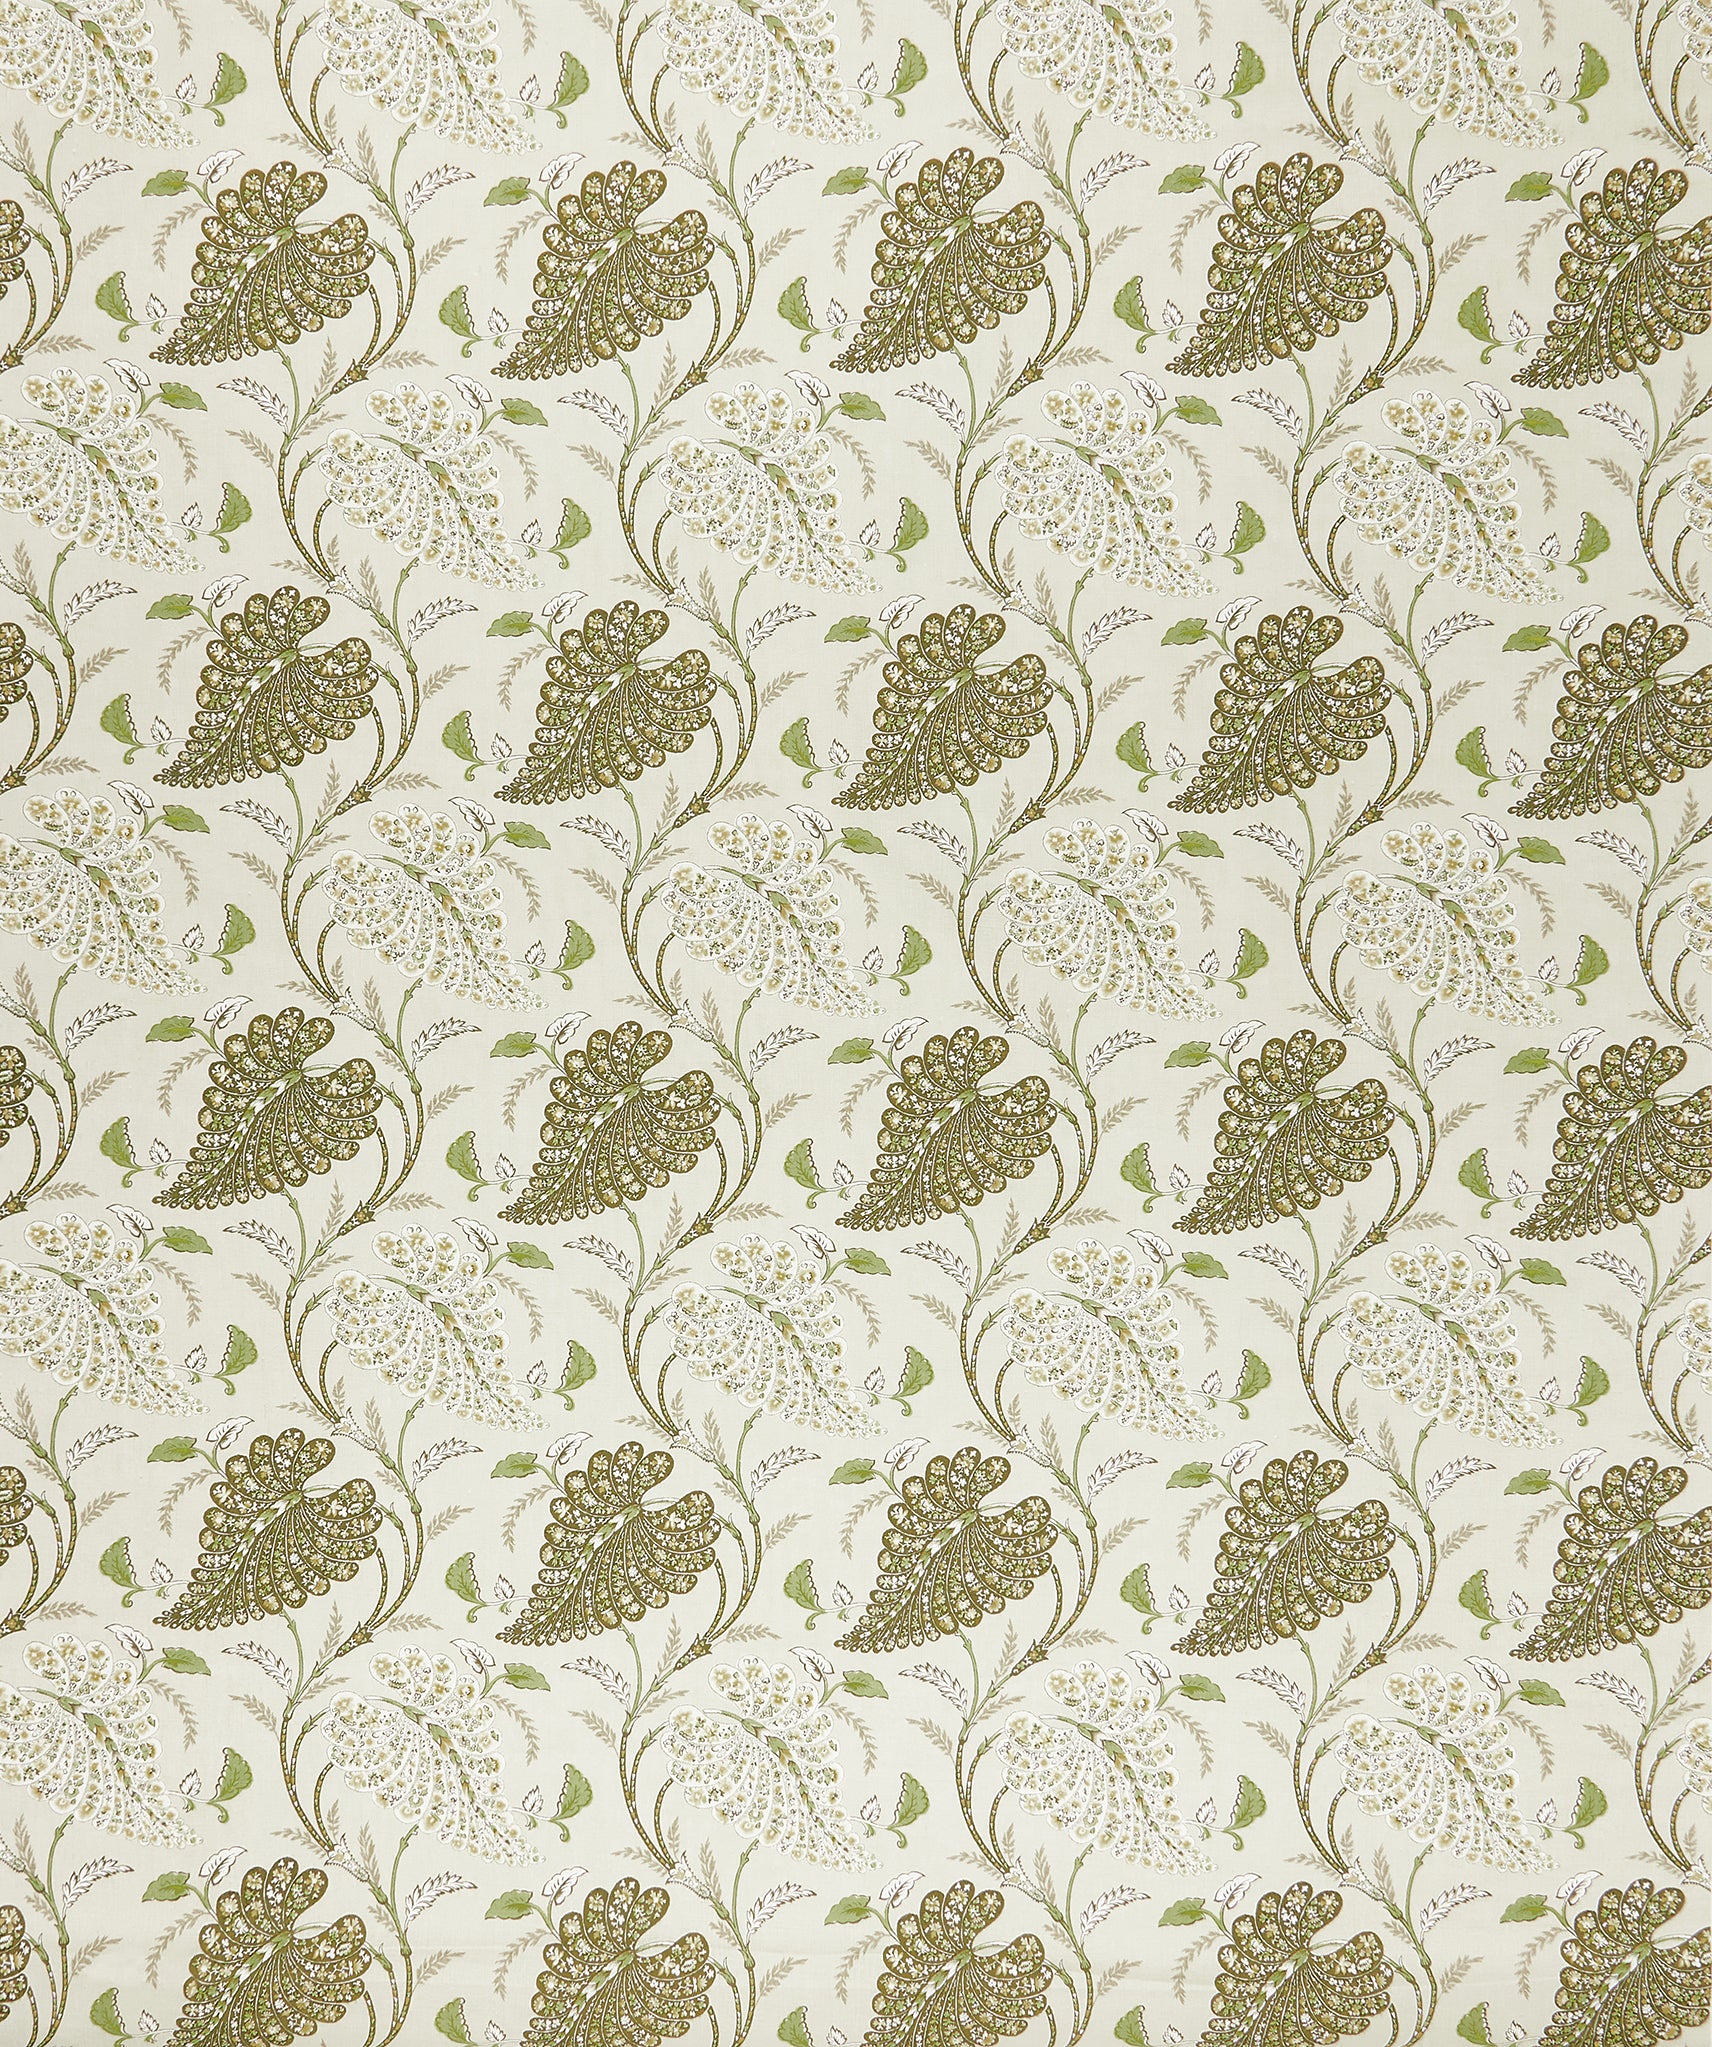 Nina Campbell Fabric - Woodbridge Felbrigg Stone/Olive/Sepia NCF4503-03